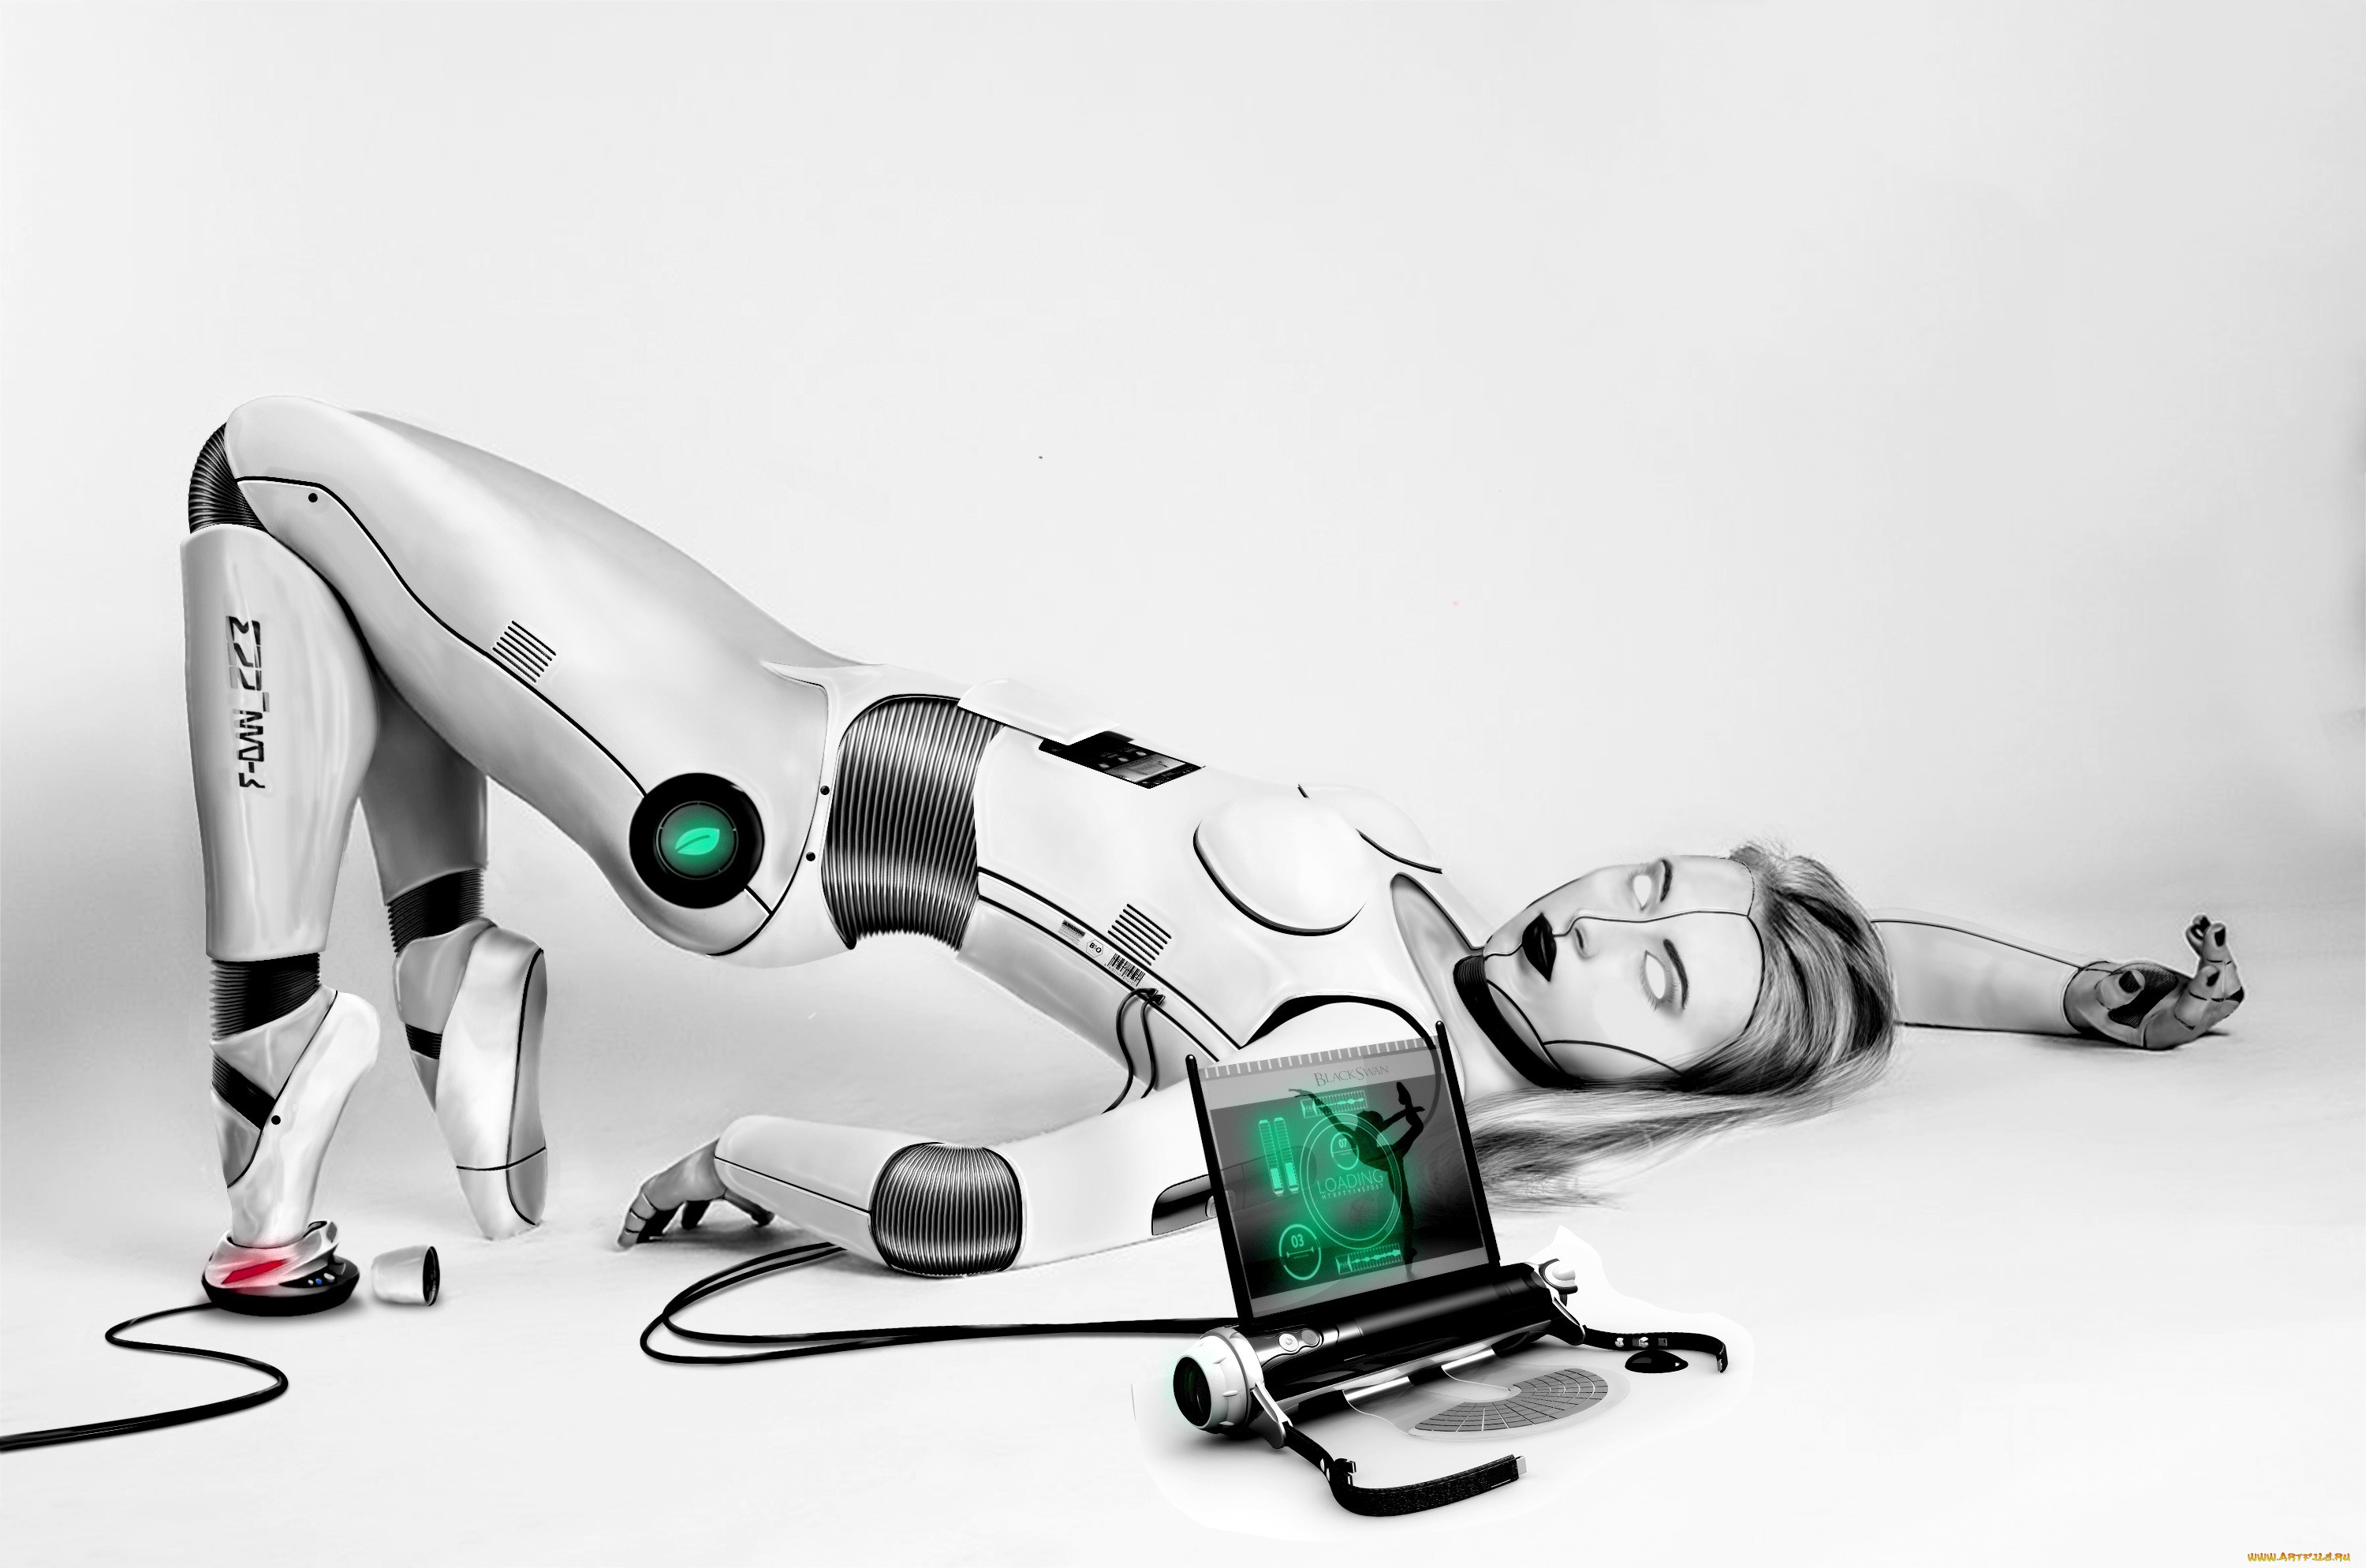 Robot orgasm machines for women